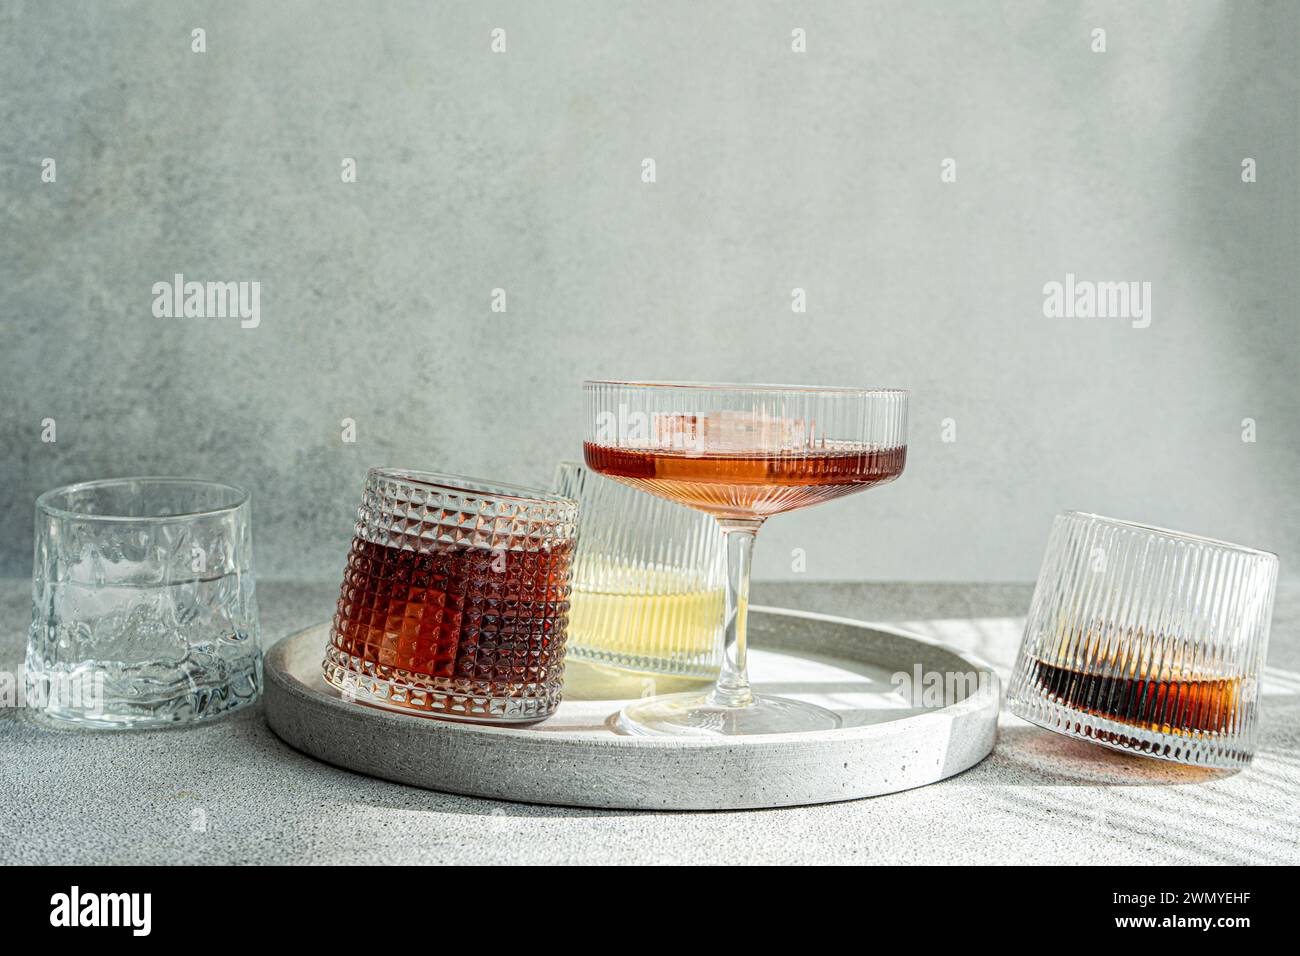 Una selezione di bevande alcoliche in bicchieri testurizzati, elegantemente esposti su un vassoio circolare in cemento con un morbido sfondo grigio Foto Stock